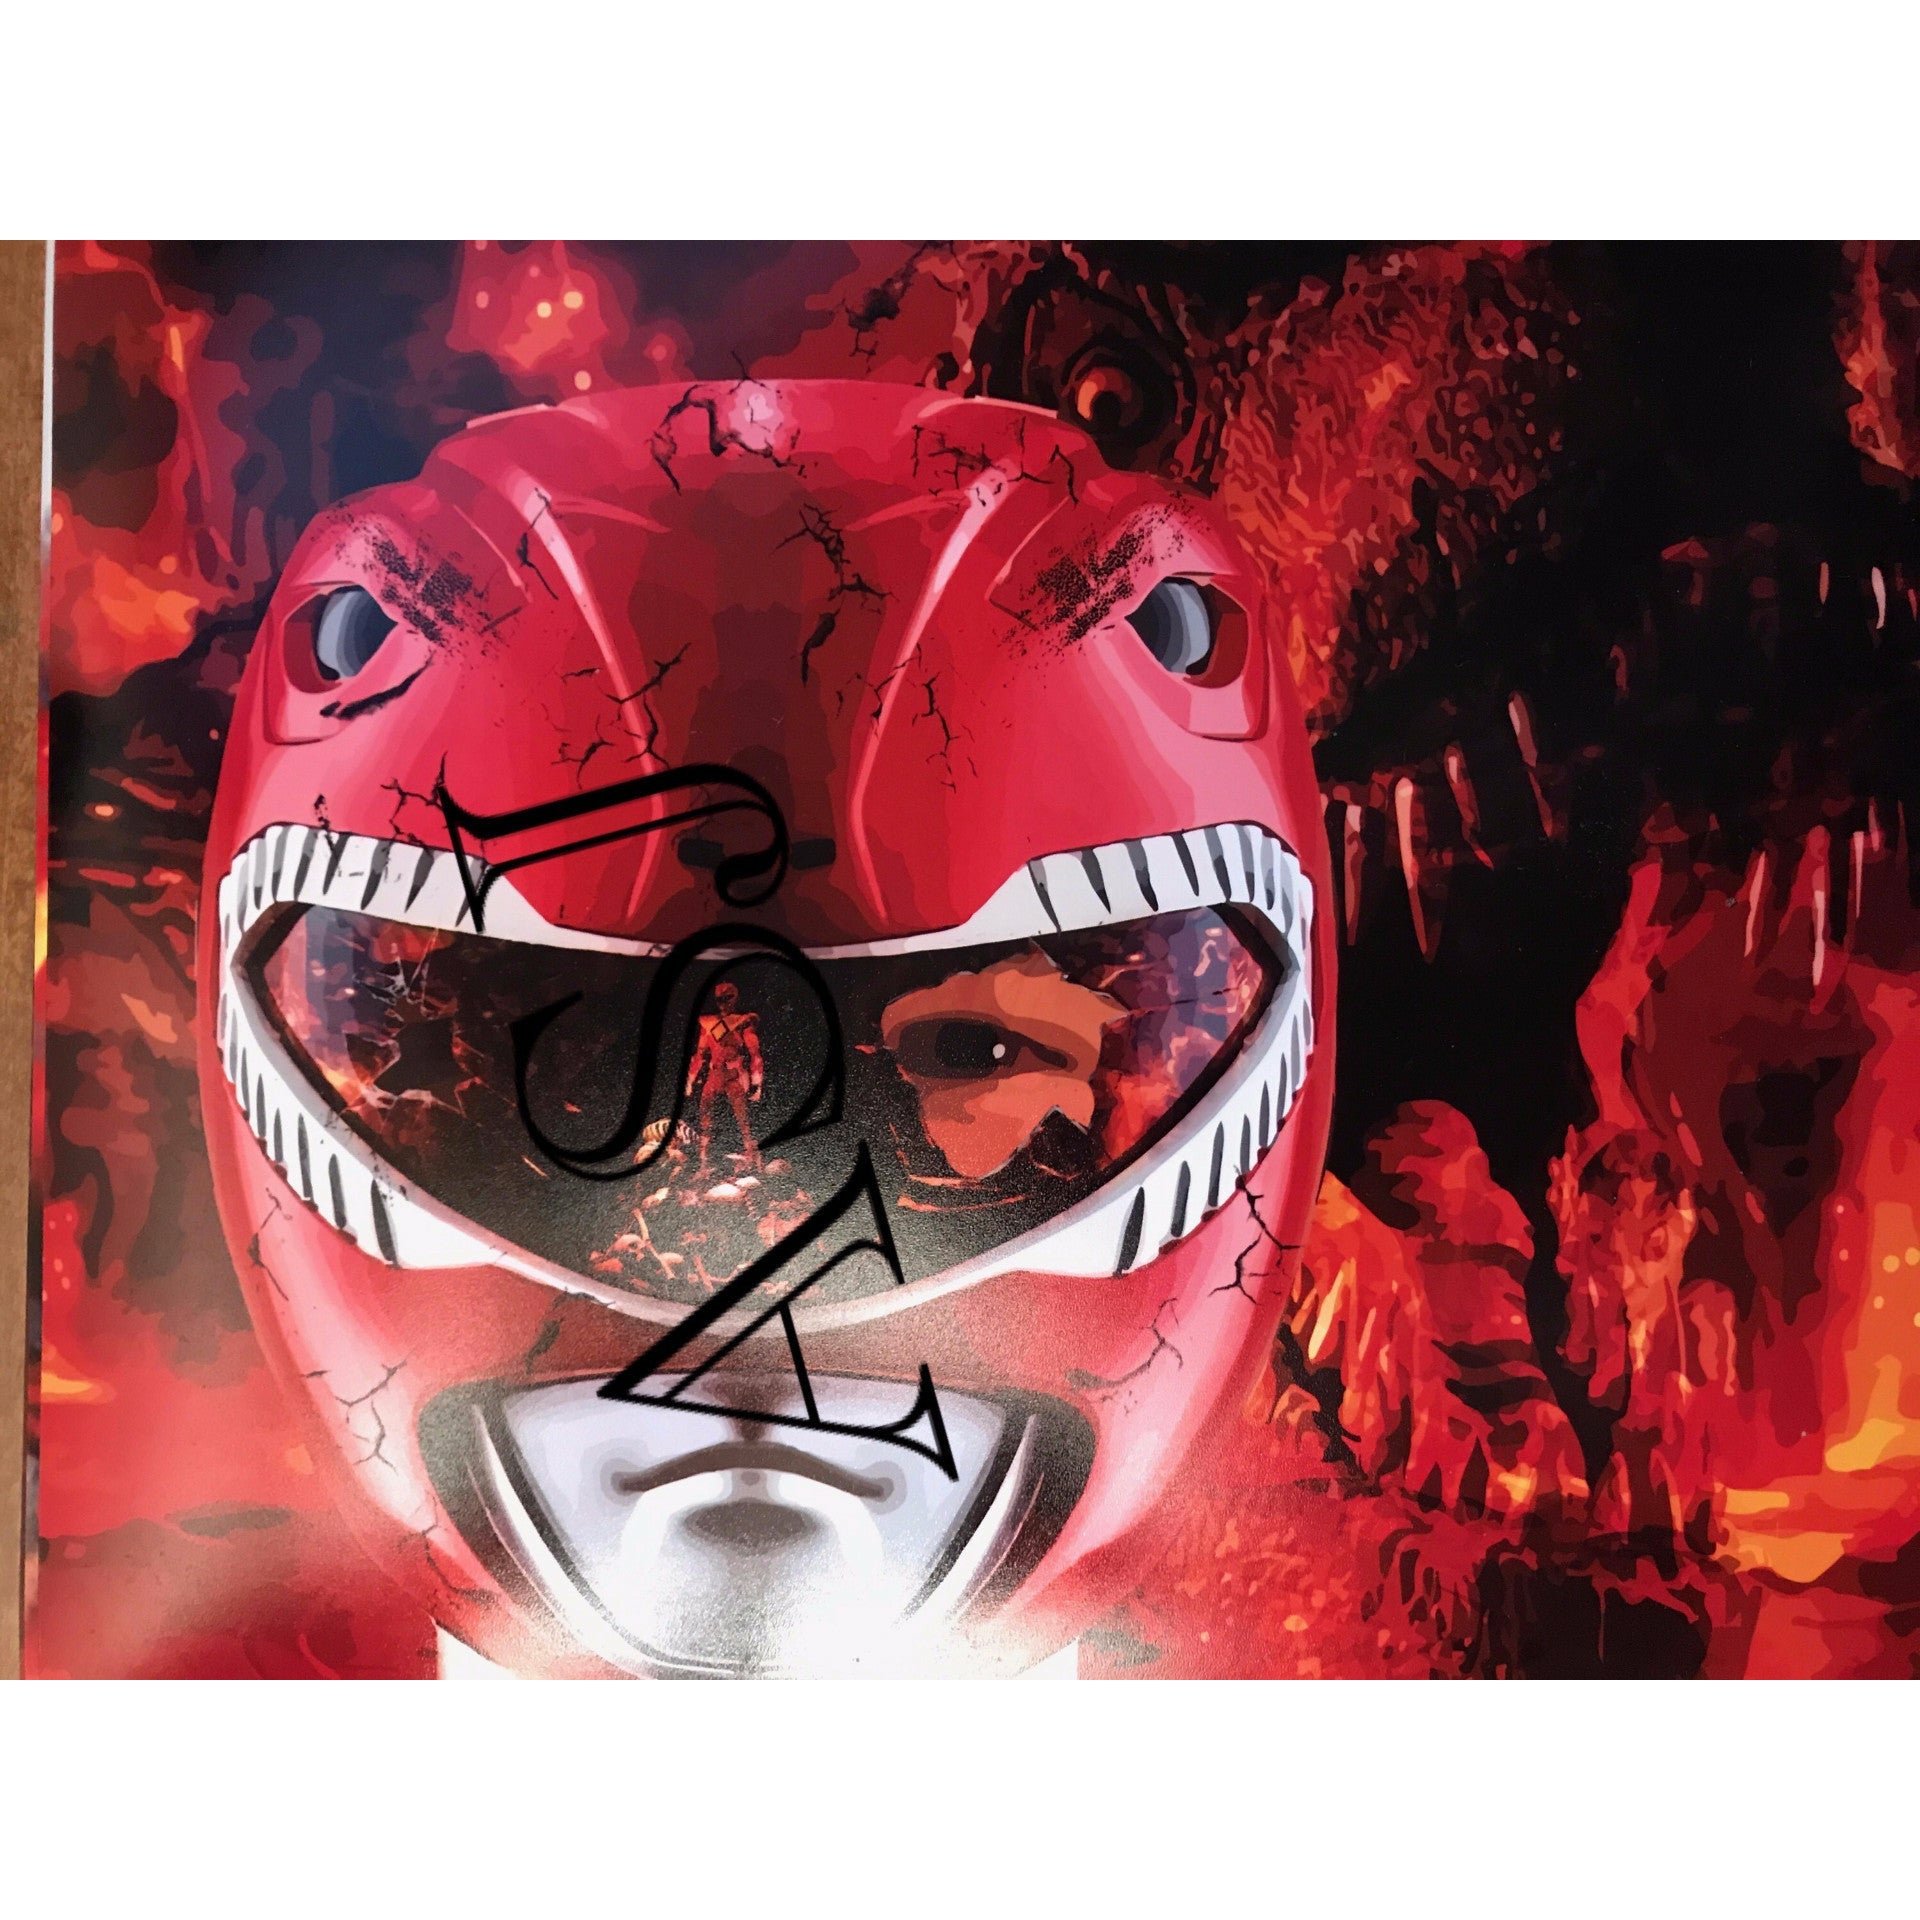 Red Ranger Helmet Print with T-Rex | Austin St. John